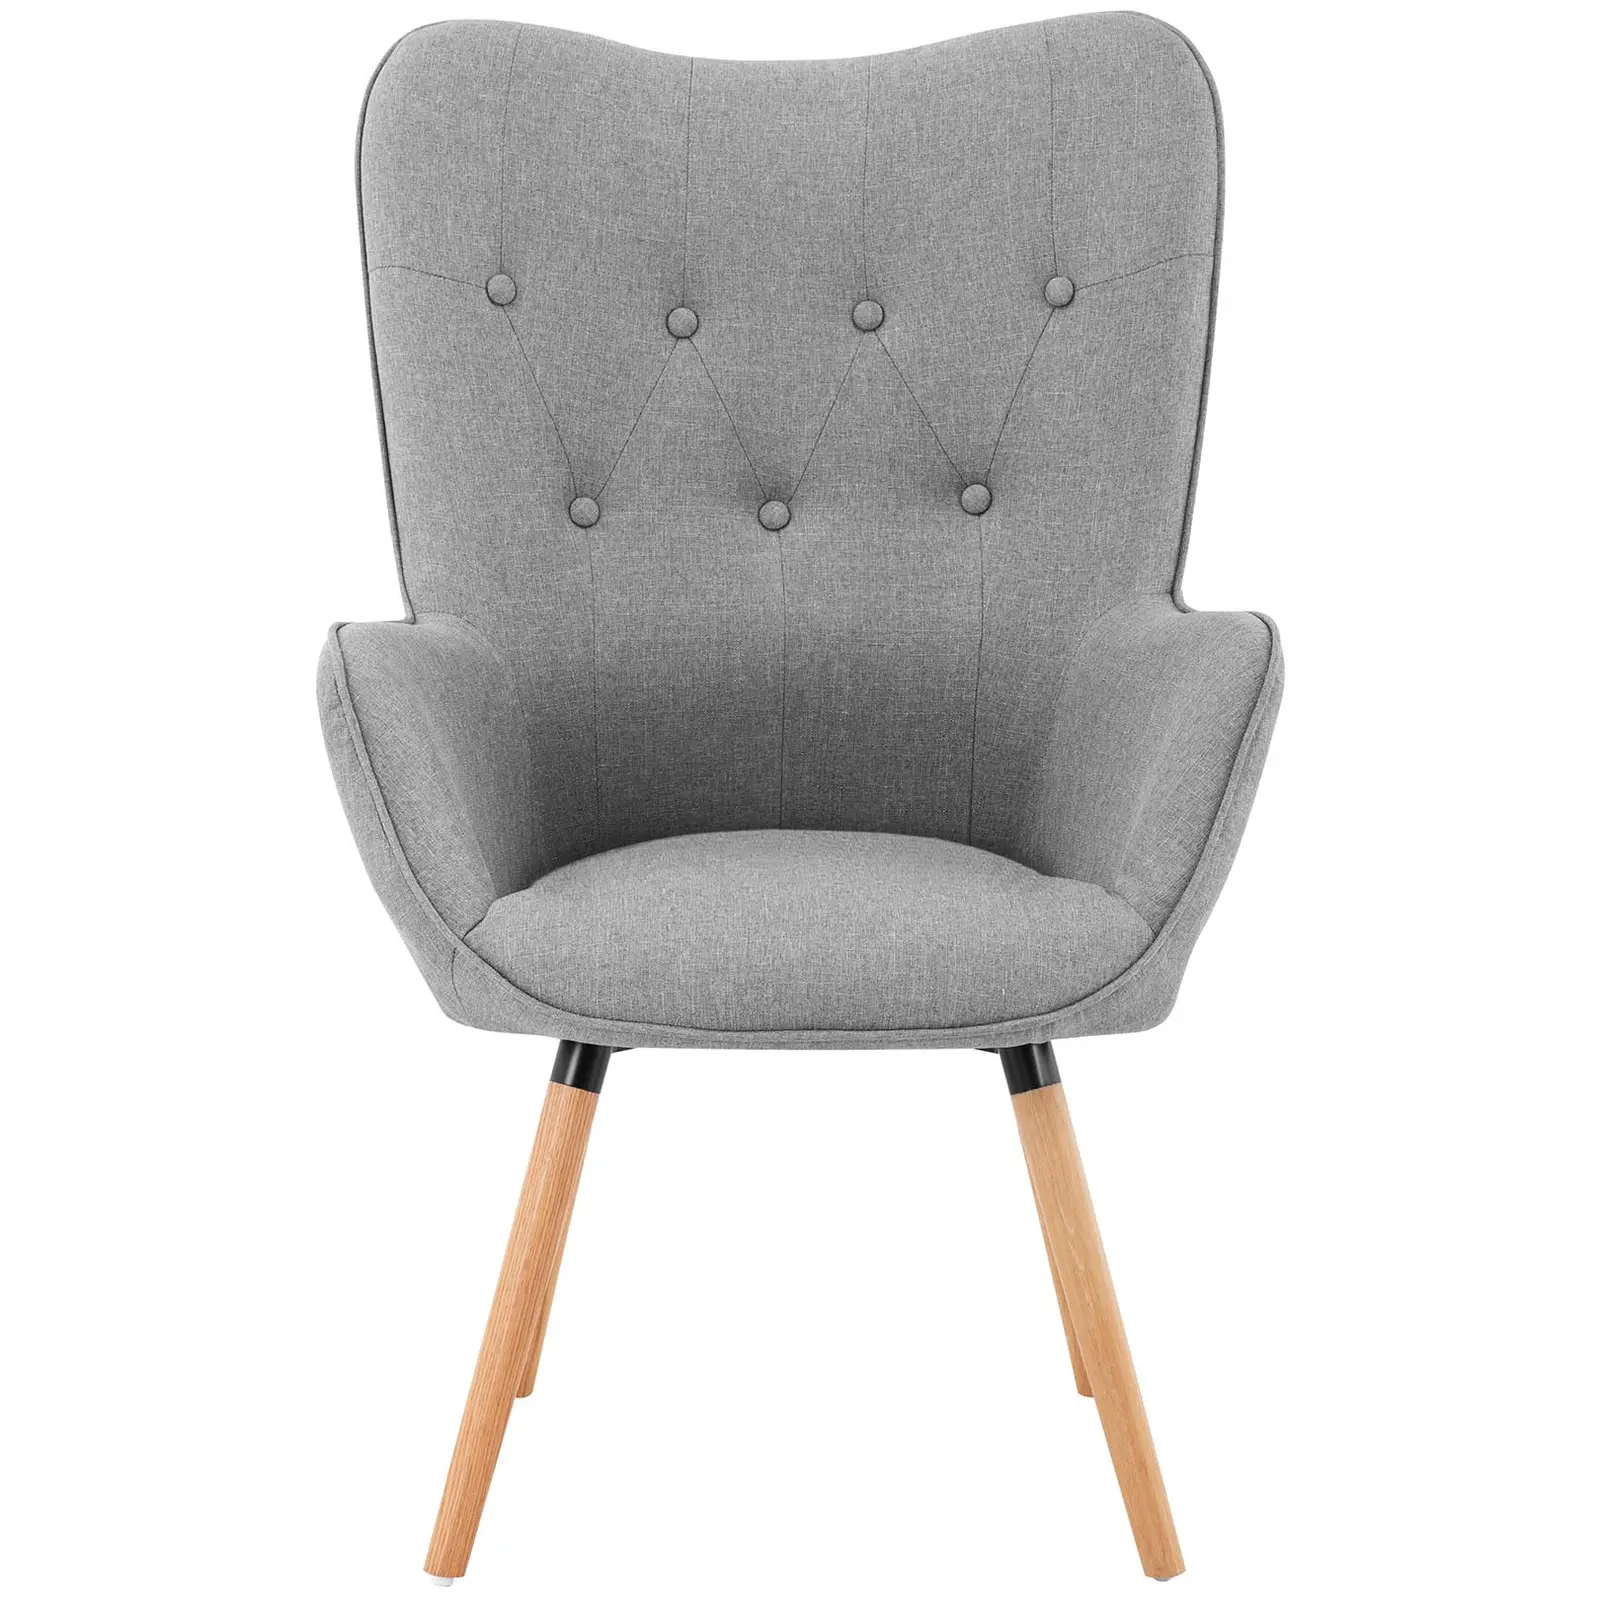 Chaise en tissu - 160 kg max. - Surface d'assise de 43 x 49 cm - Coloris gris